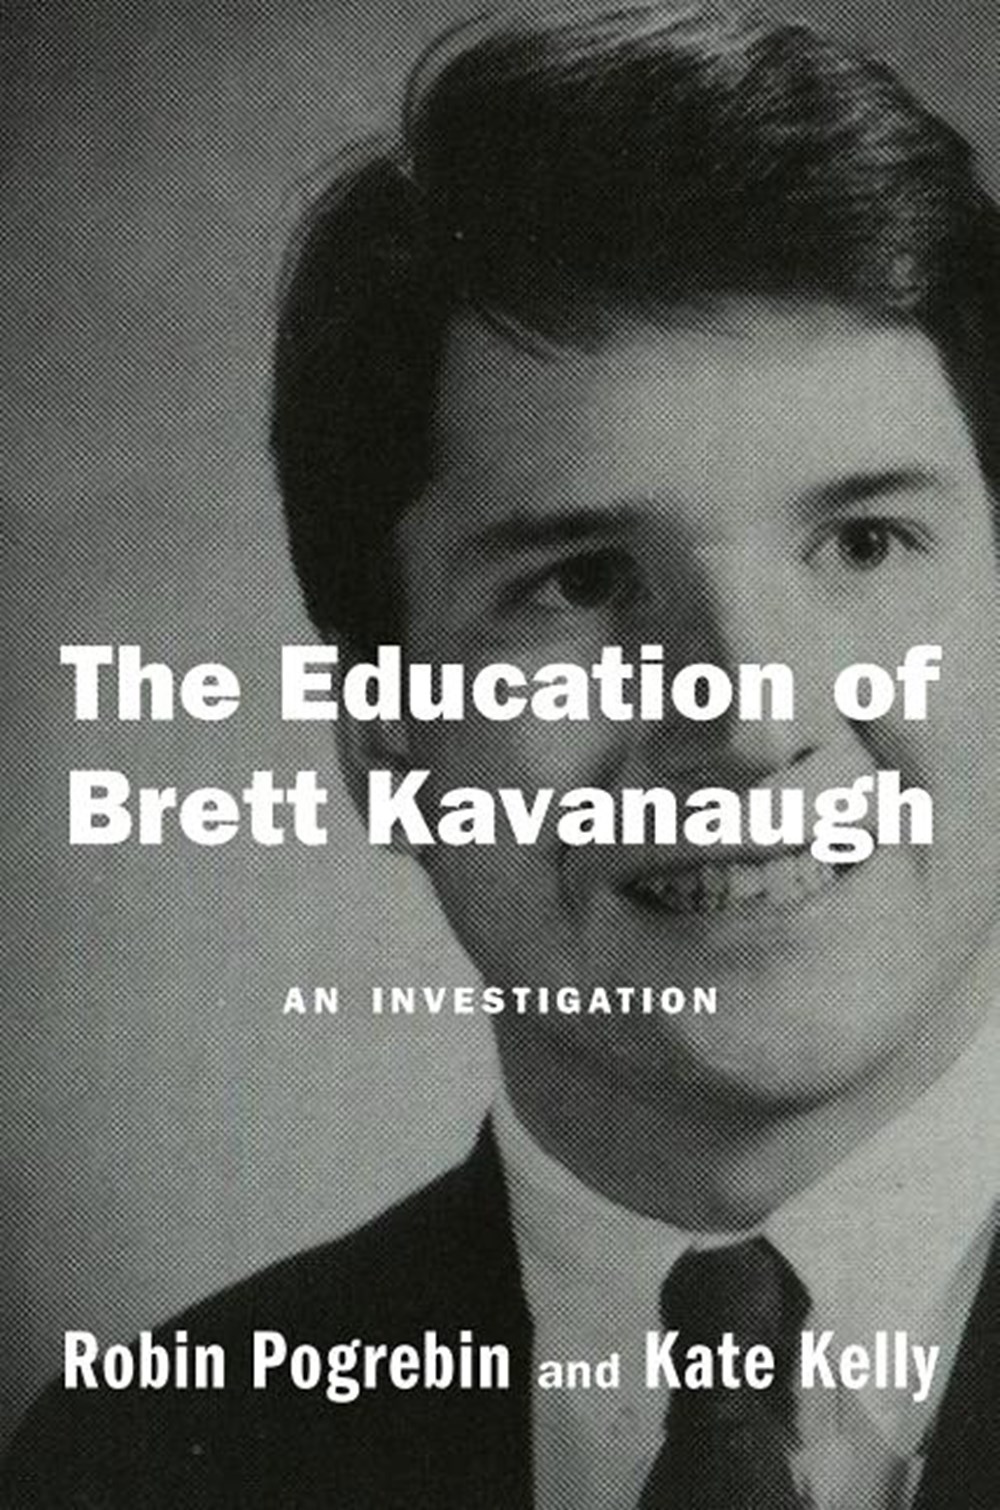 Education of Brett Kavanaugh: An Investigation